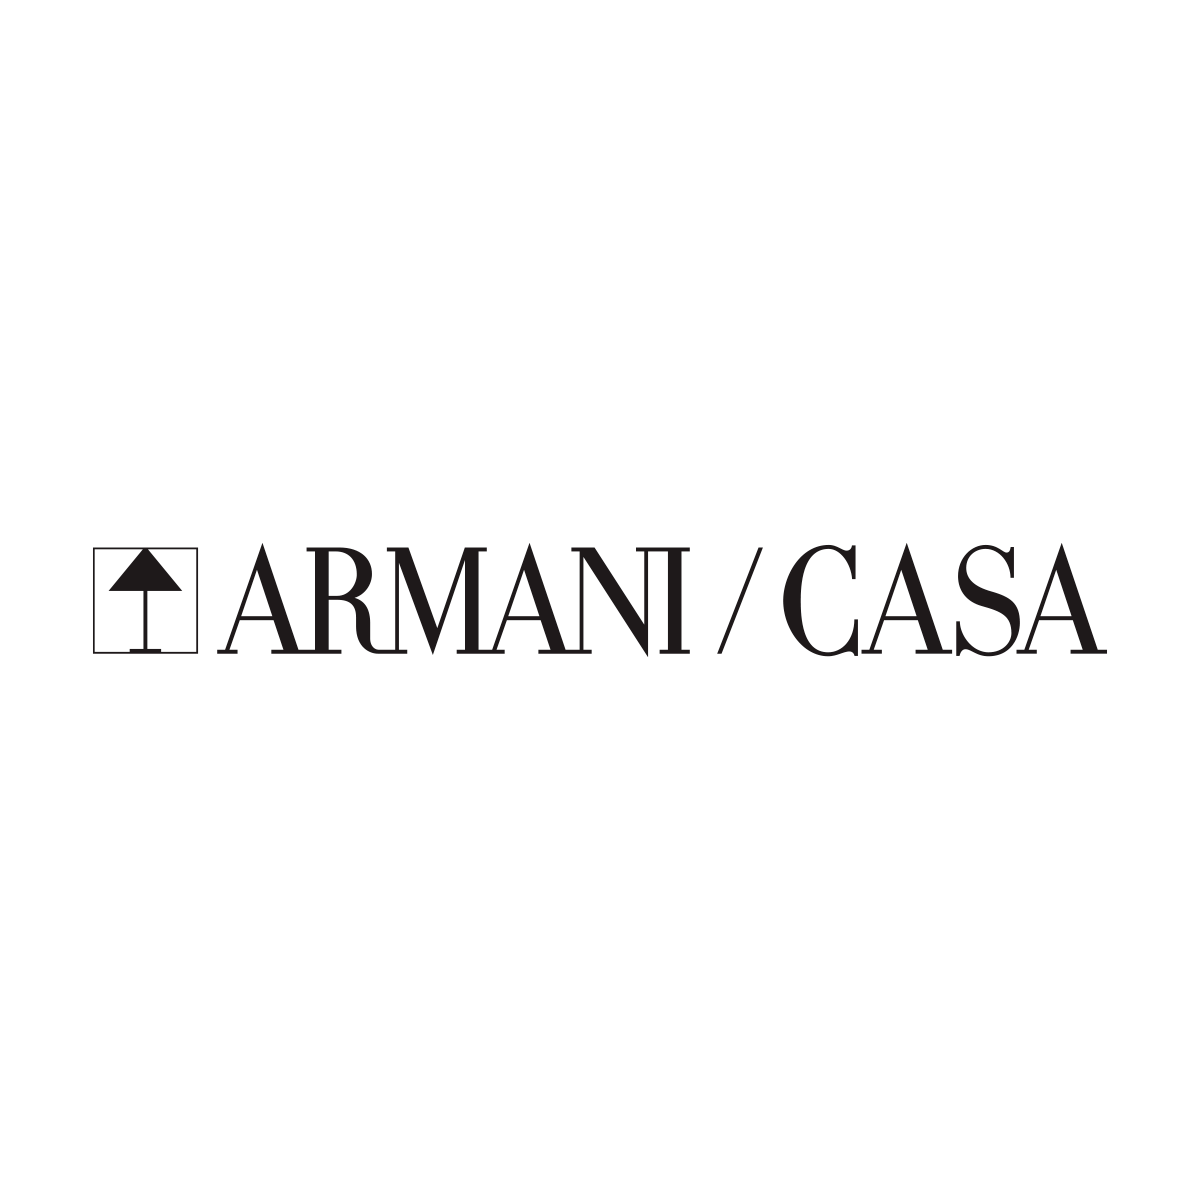 Armani/Casa